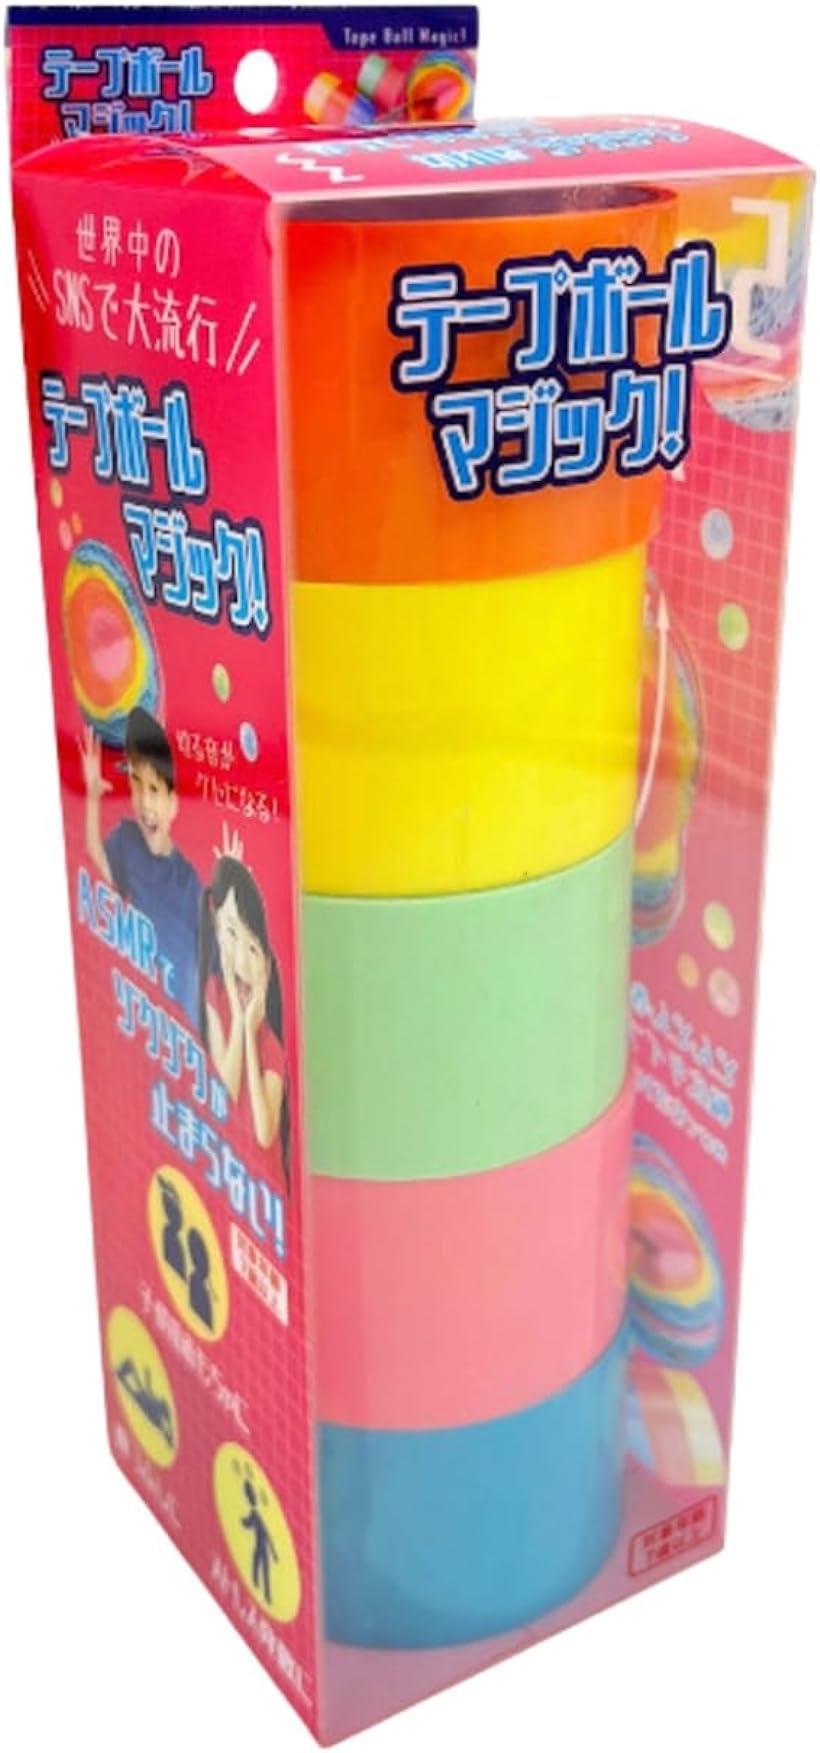 テープボール用テープ 太い 5色 セット テープボール用のテープ 「テープボールマジック！」 テープボールセット